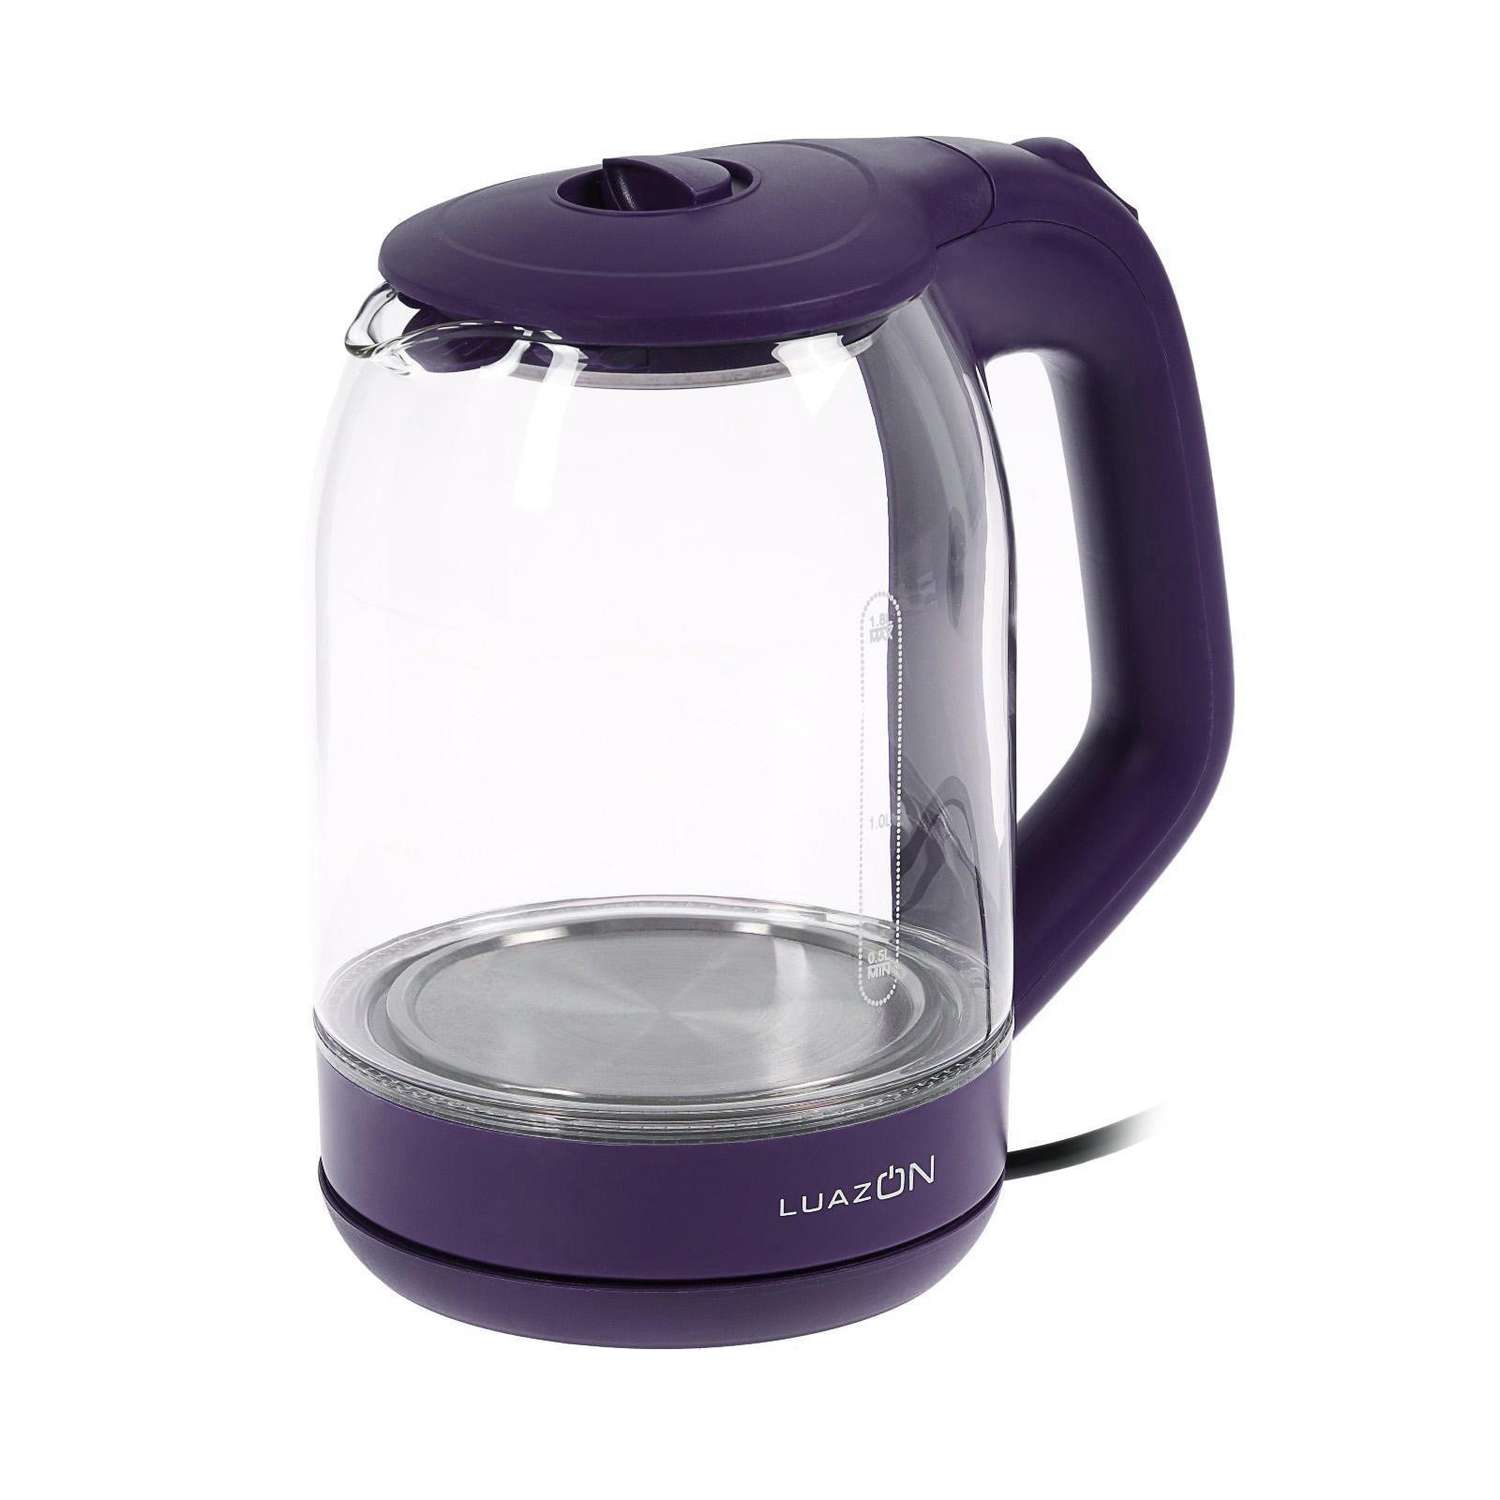 Чайник Luazon Home электрический LSK-1809 стекло 1.8 л 1500 Вт подсветка фиолетовый - фото 4